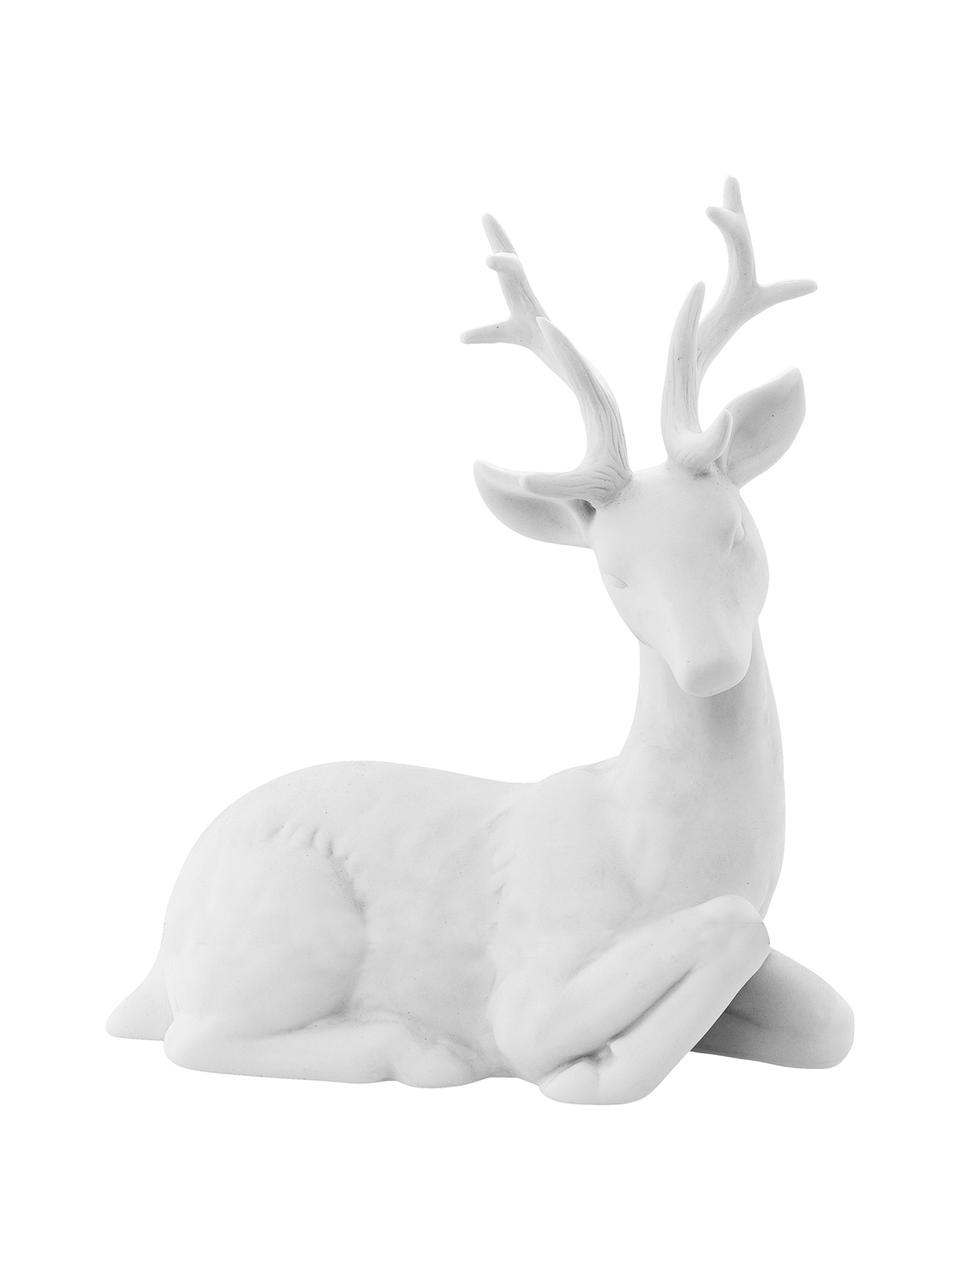 Dekoracja Reindeer, Porcelana, Biały, S 19 x W 22 cm